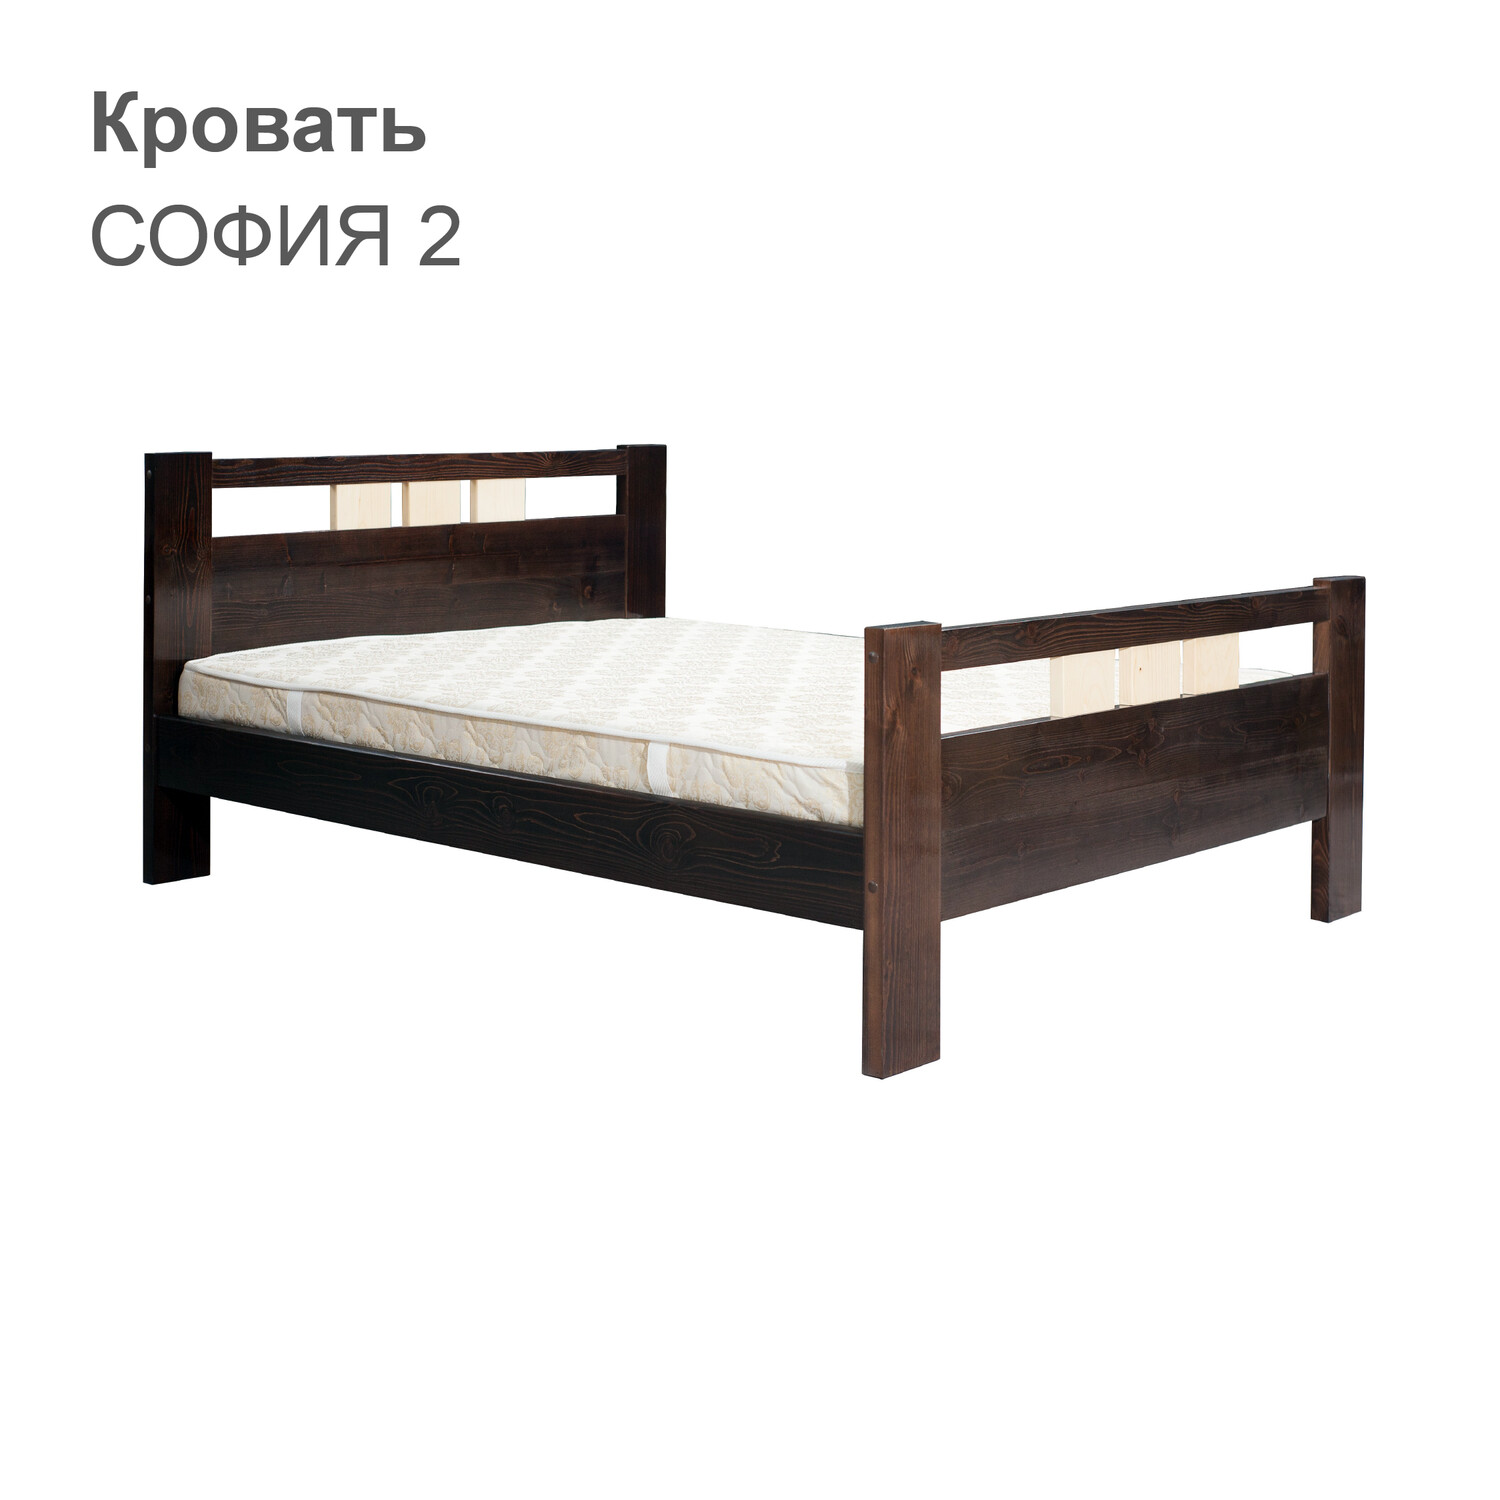 Кровать СОФИЯ 2 (с двумя спинками)